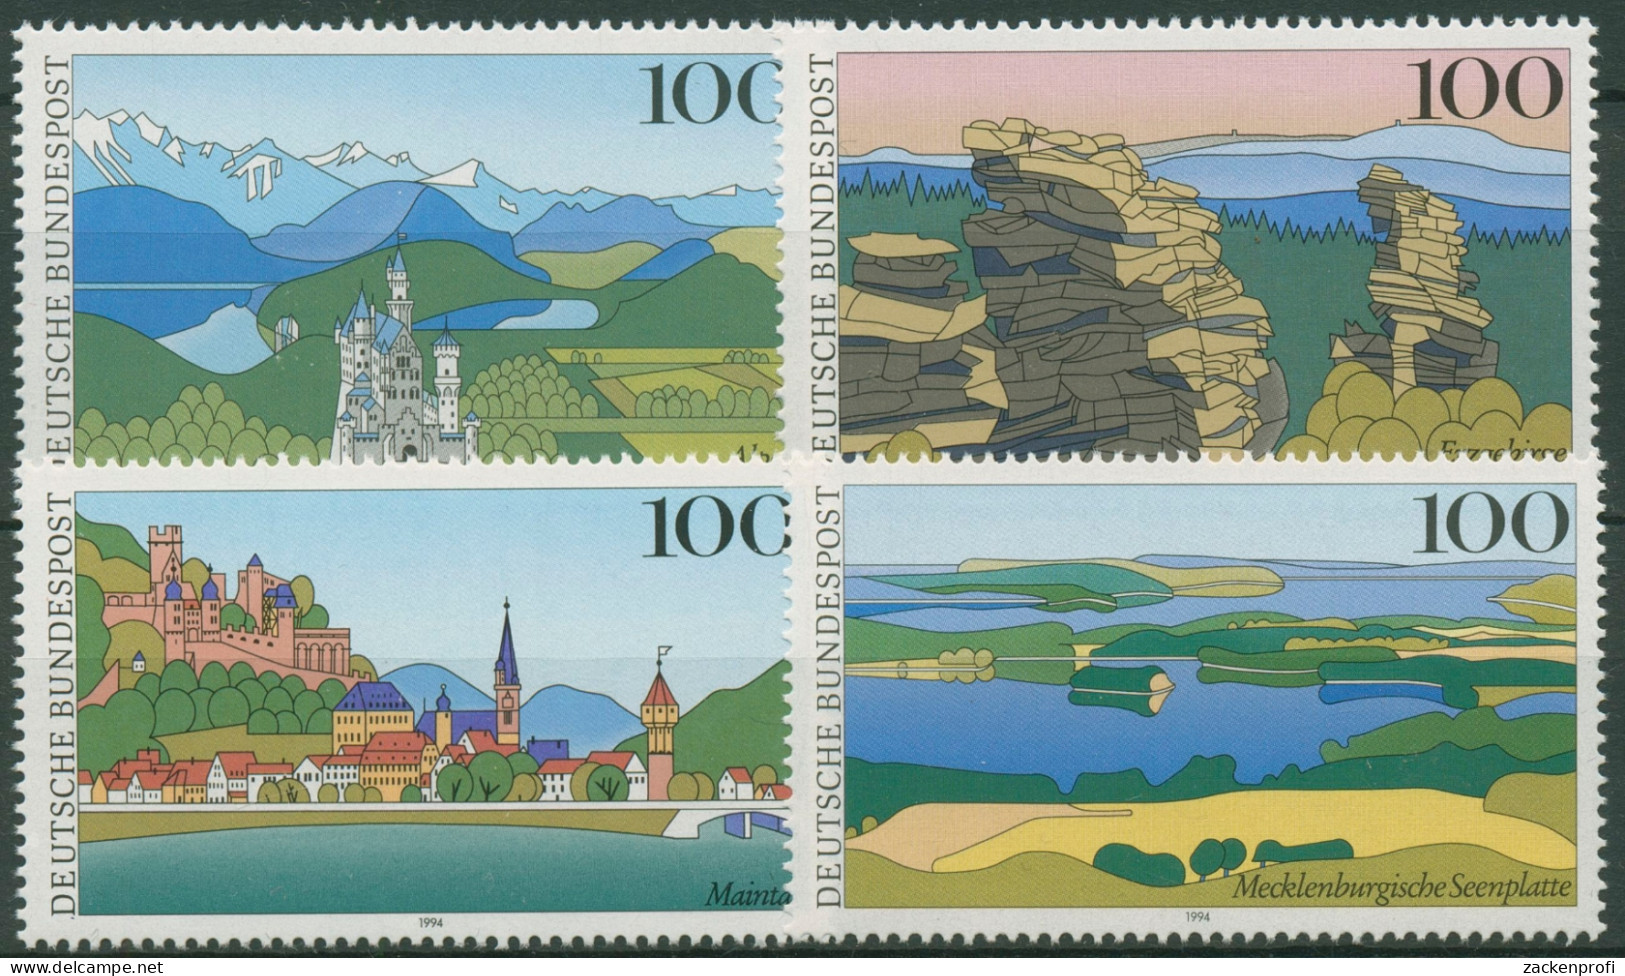 Bund 1994 Landschaften Alpen Erzgebirge Maintal Müritz 1742/45 Postfrisch - Neufs